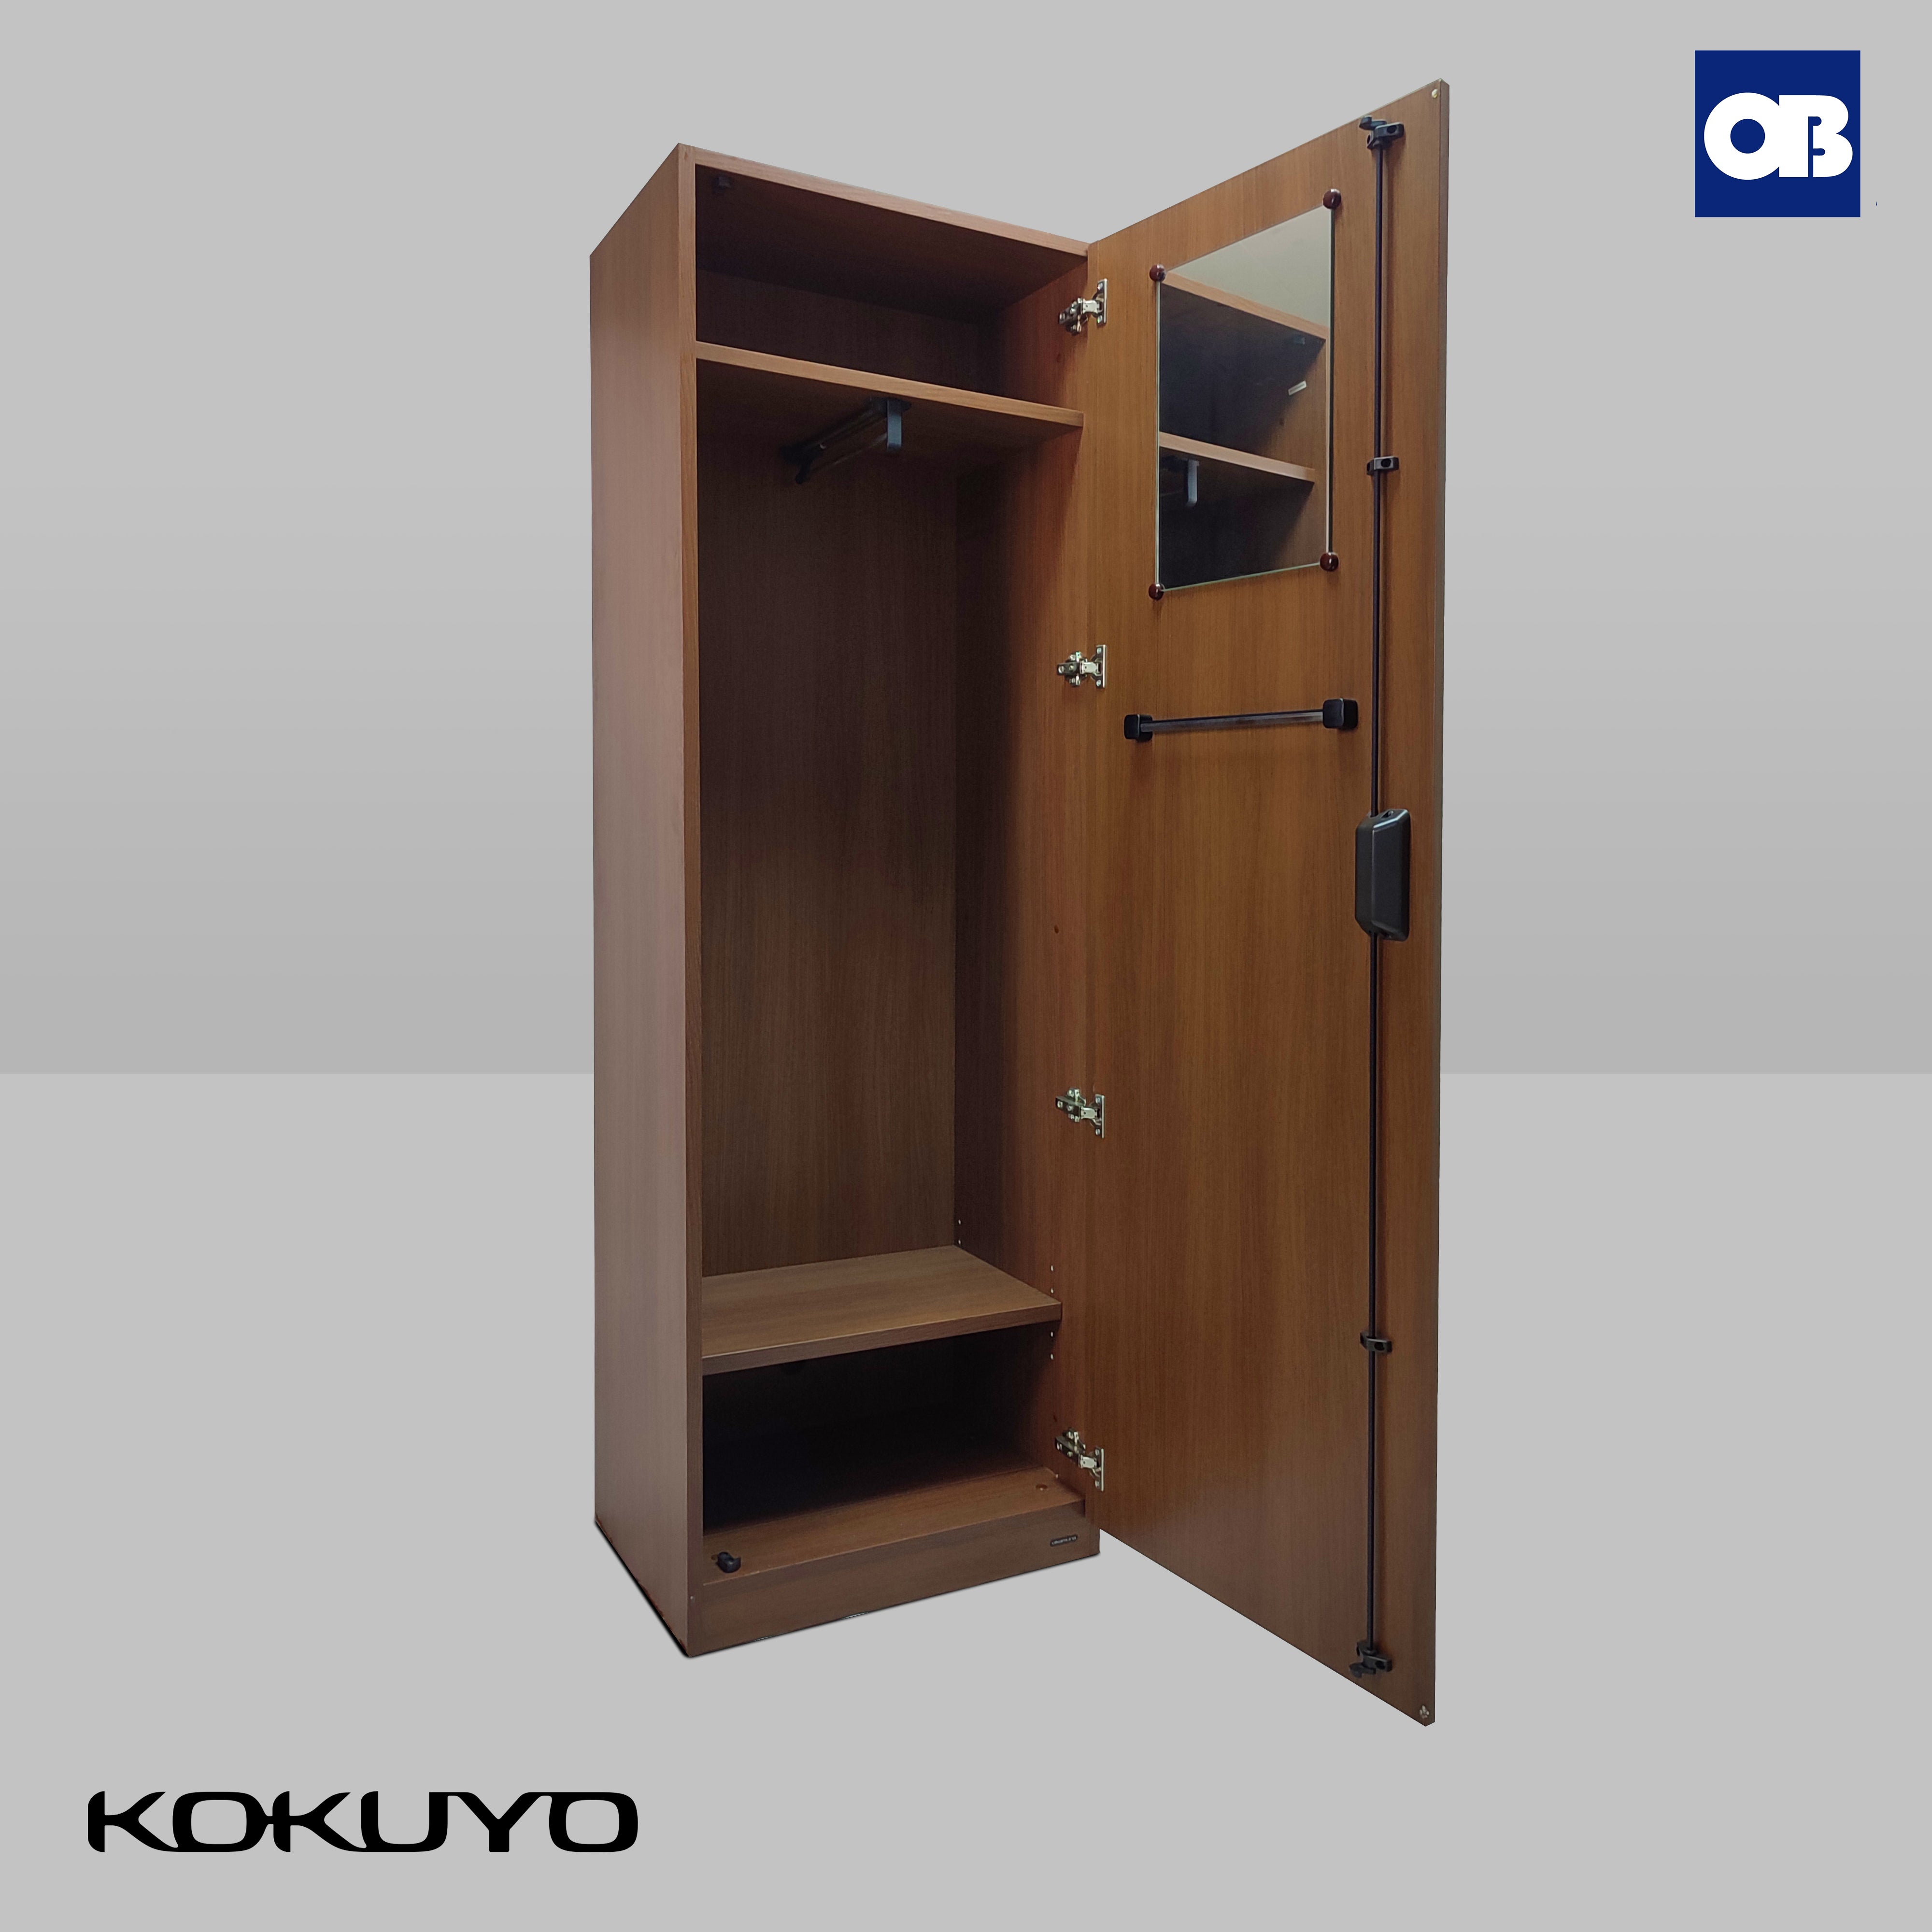 Kokuyo Wardrobe Cabinet